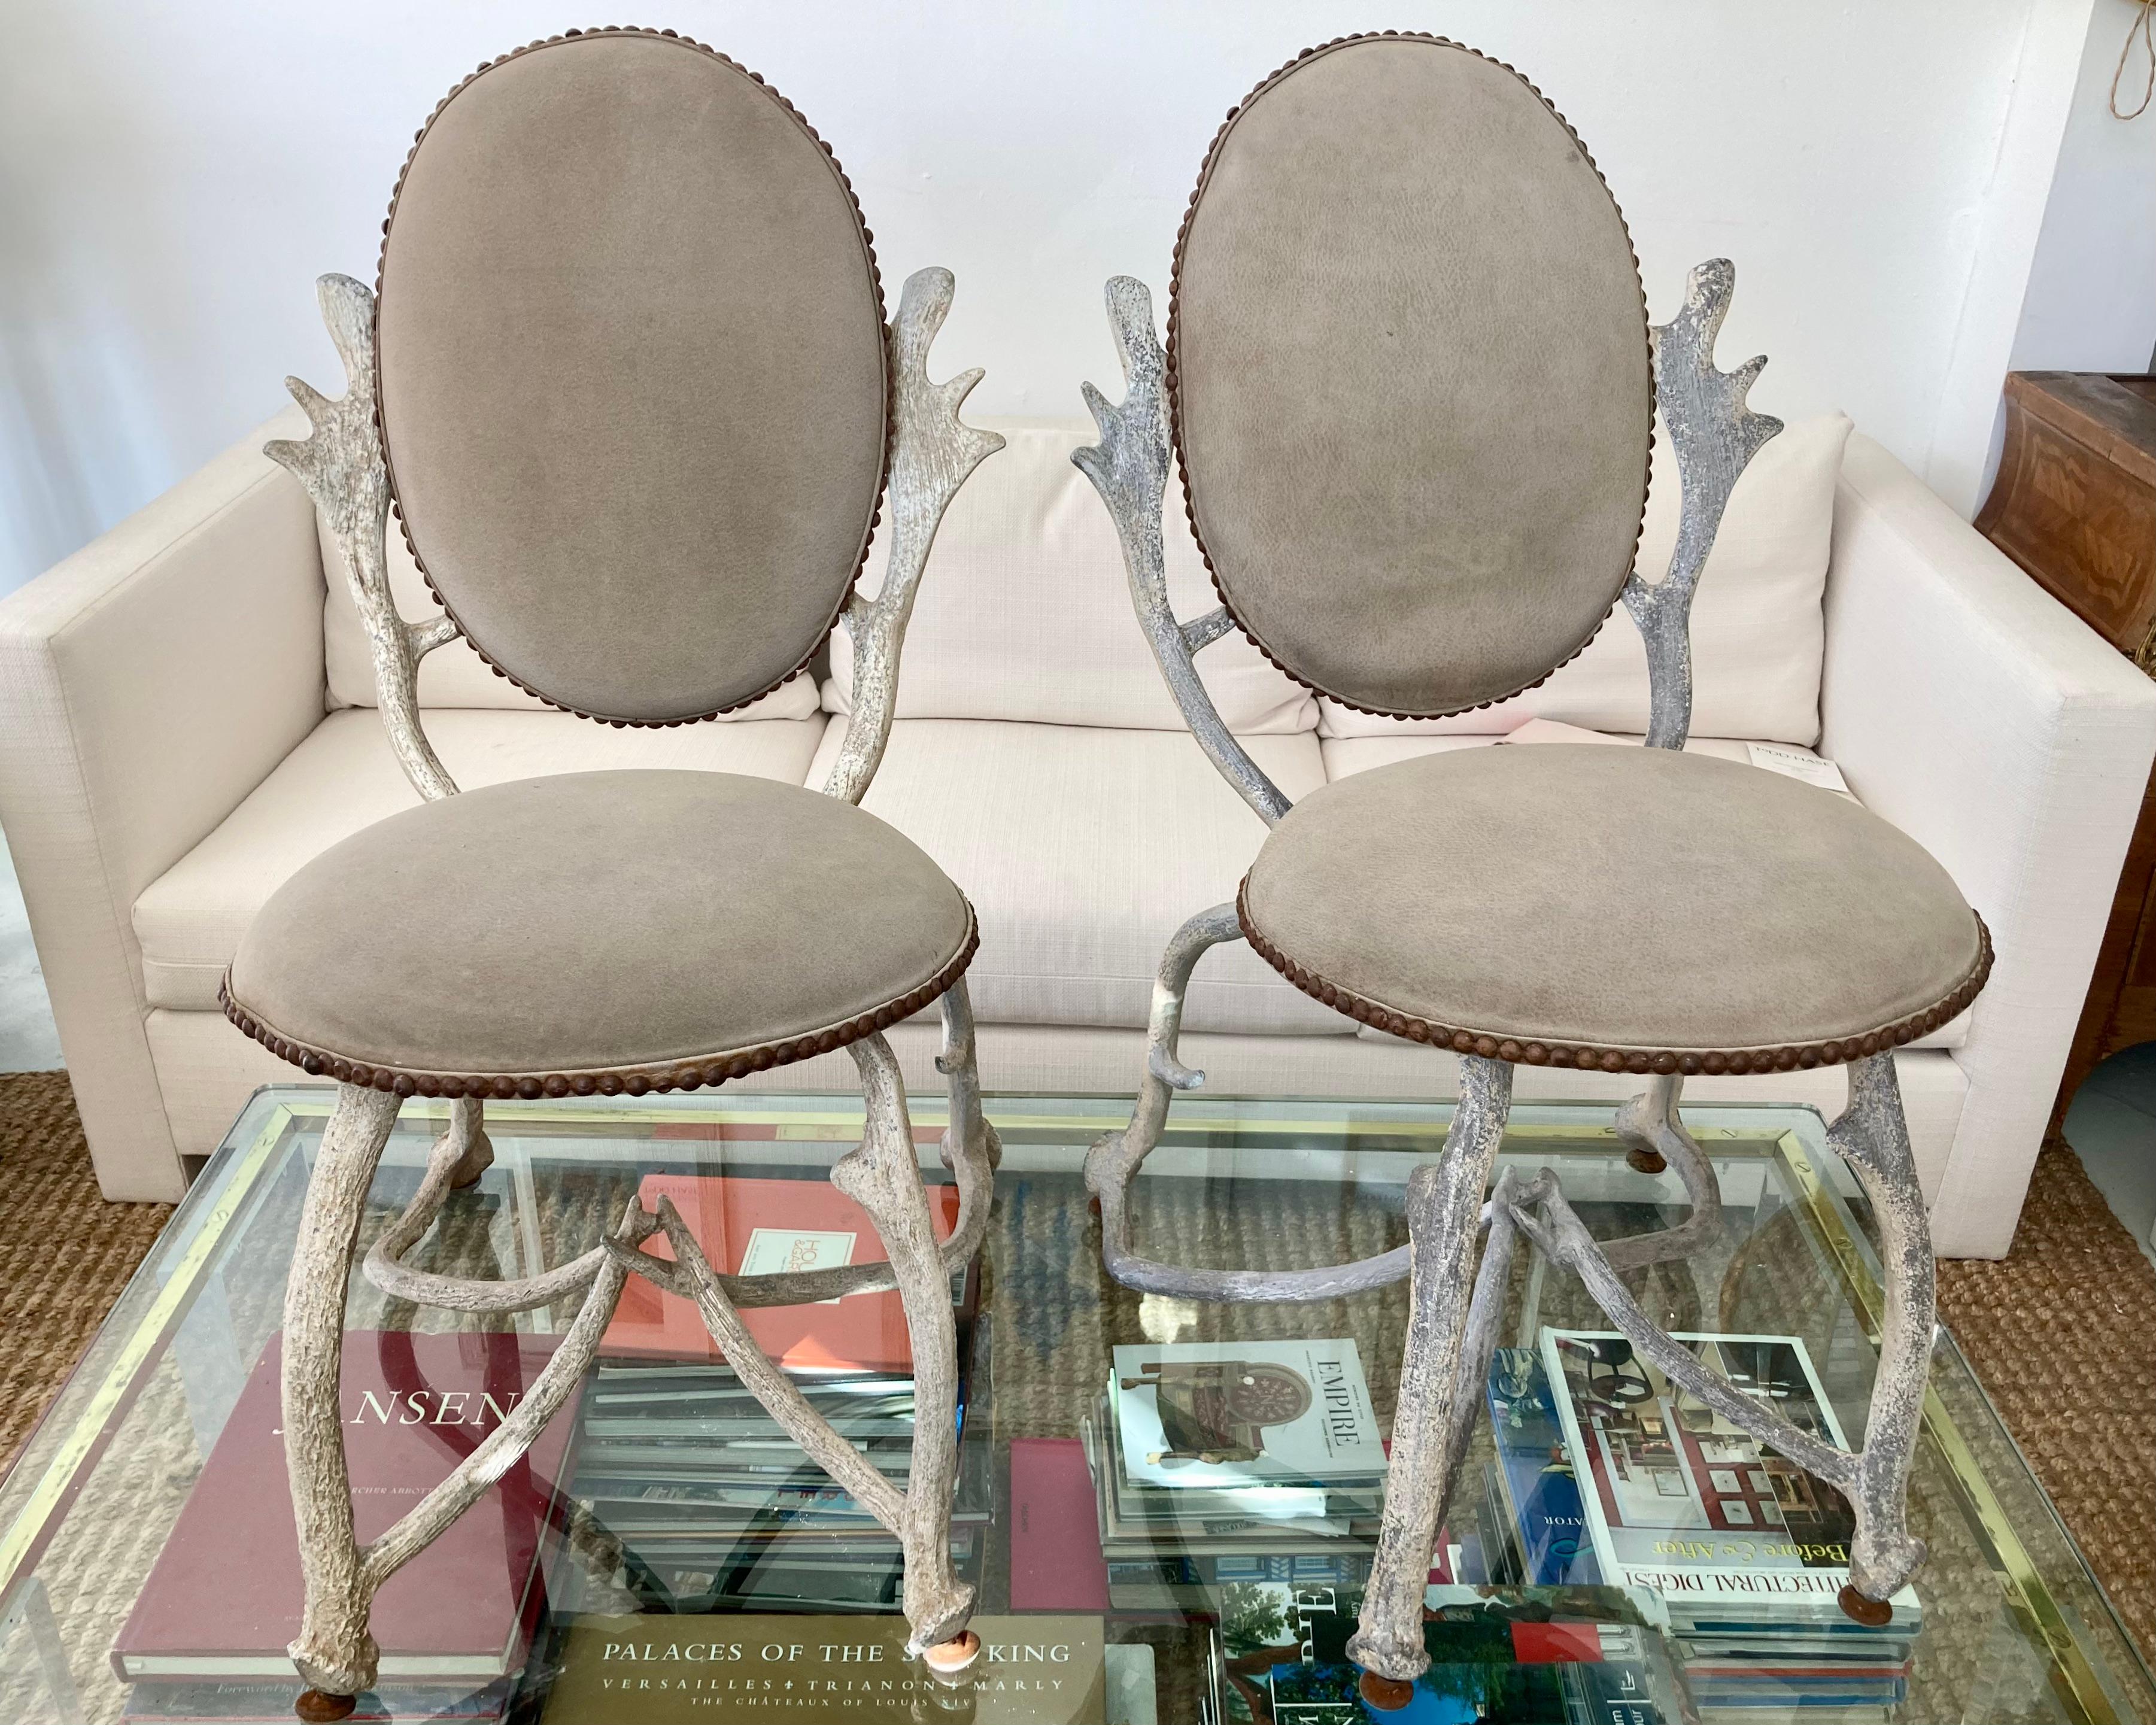 Magnifique paire de chaises en corne d'Arthur Court. Ces objets sont en fonte d'aluminium et ont une belle finition peinte à la main en blanc cassé naturel. Un magnifique daim gris en guise de revêtement. Quelques traces d'usure, mais qui ajoutent